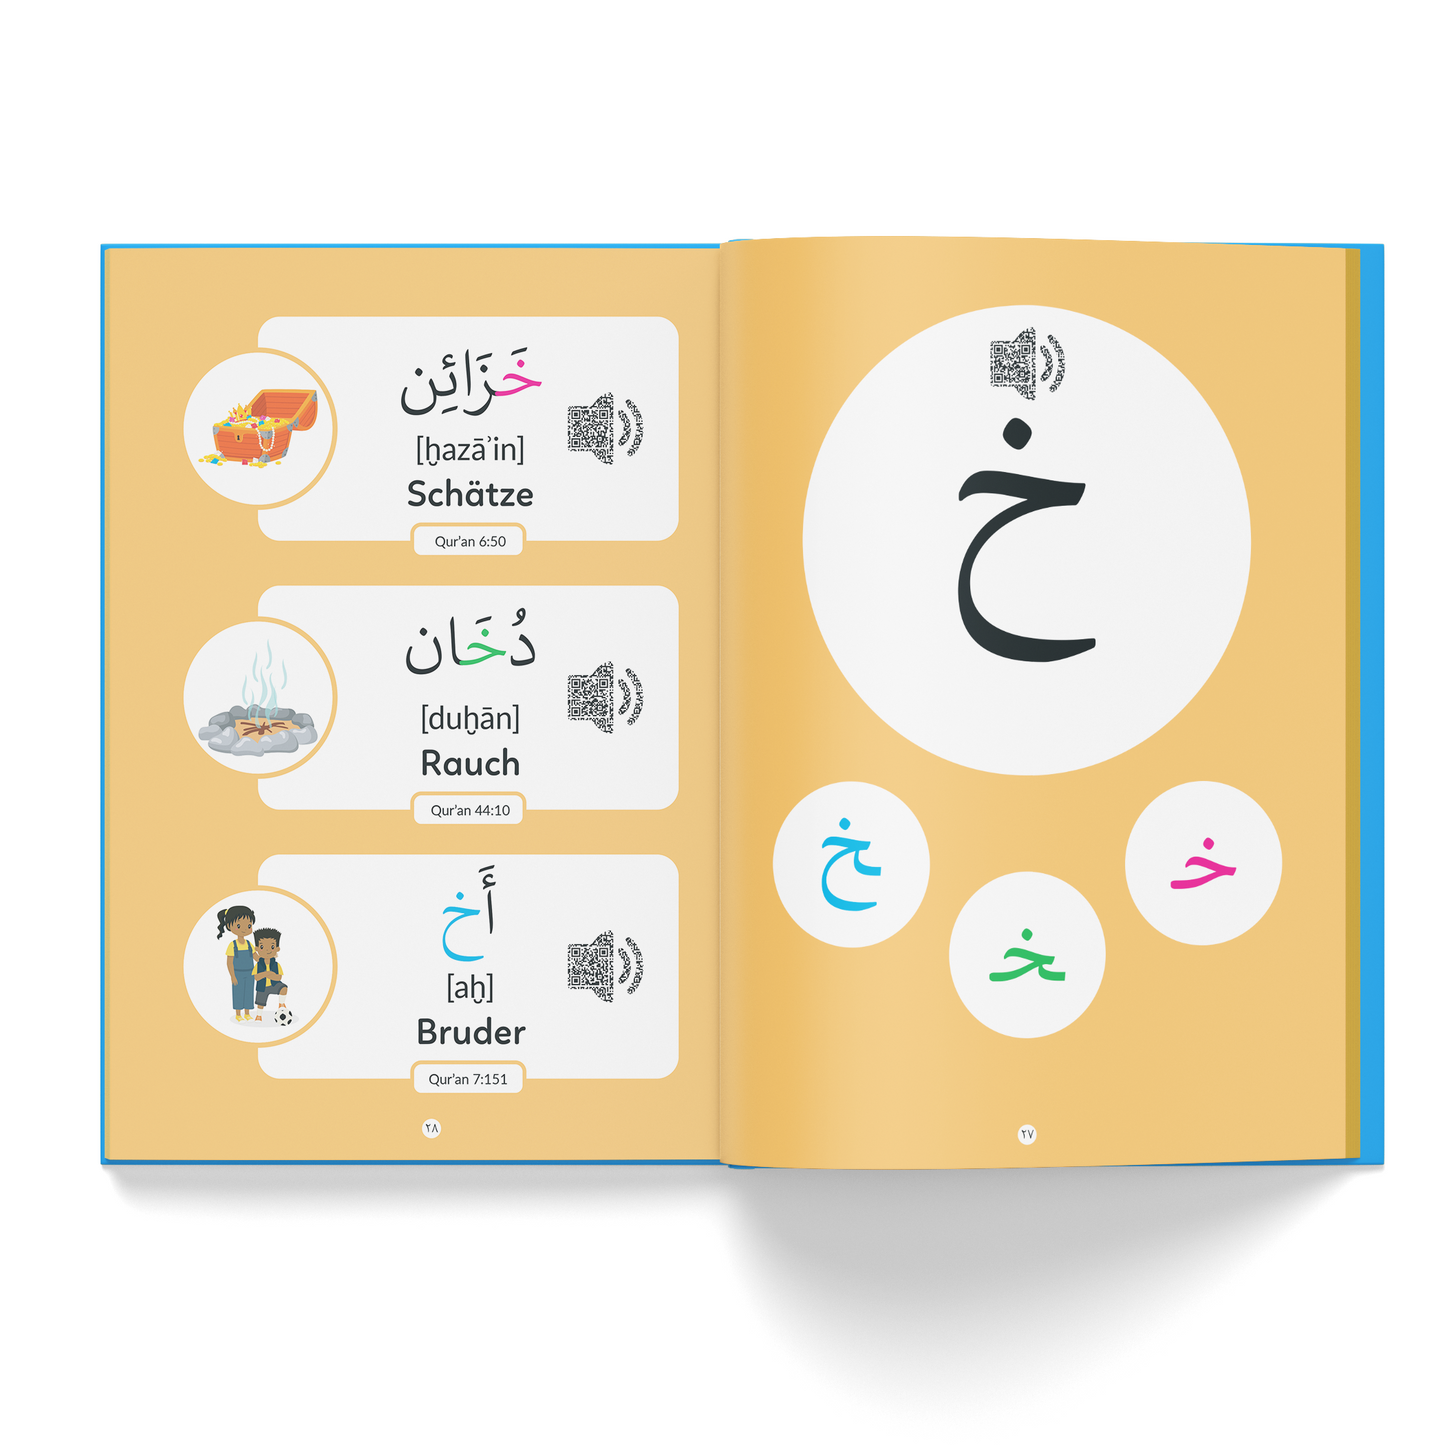 Ich lerne das arabische Alphabet anhand von Buchstabenlauten und Wörtern aus dem Qur’an